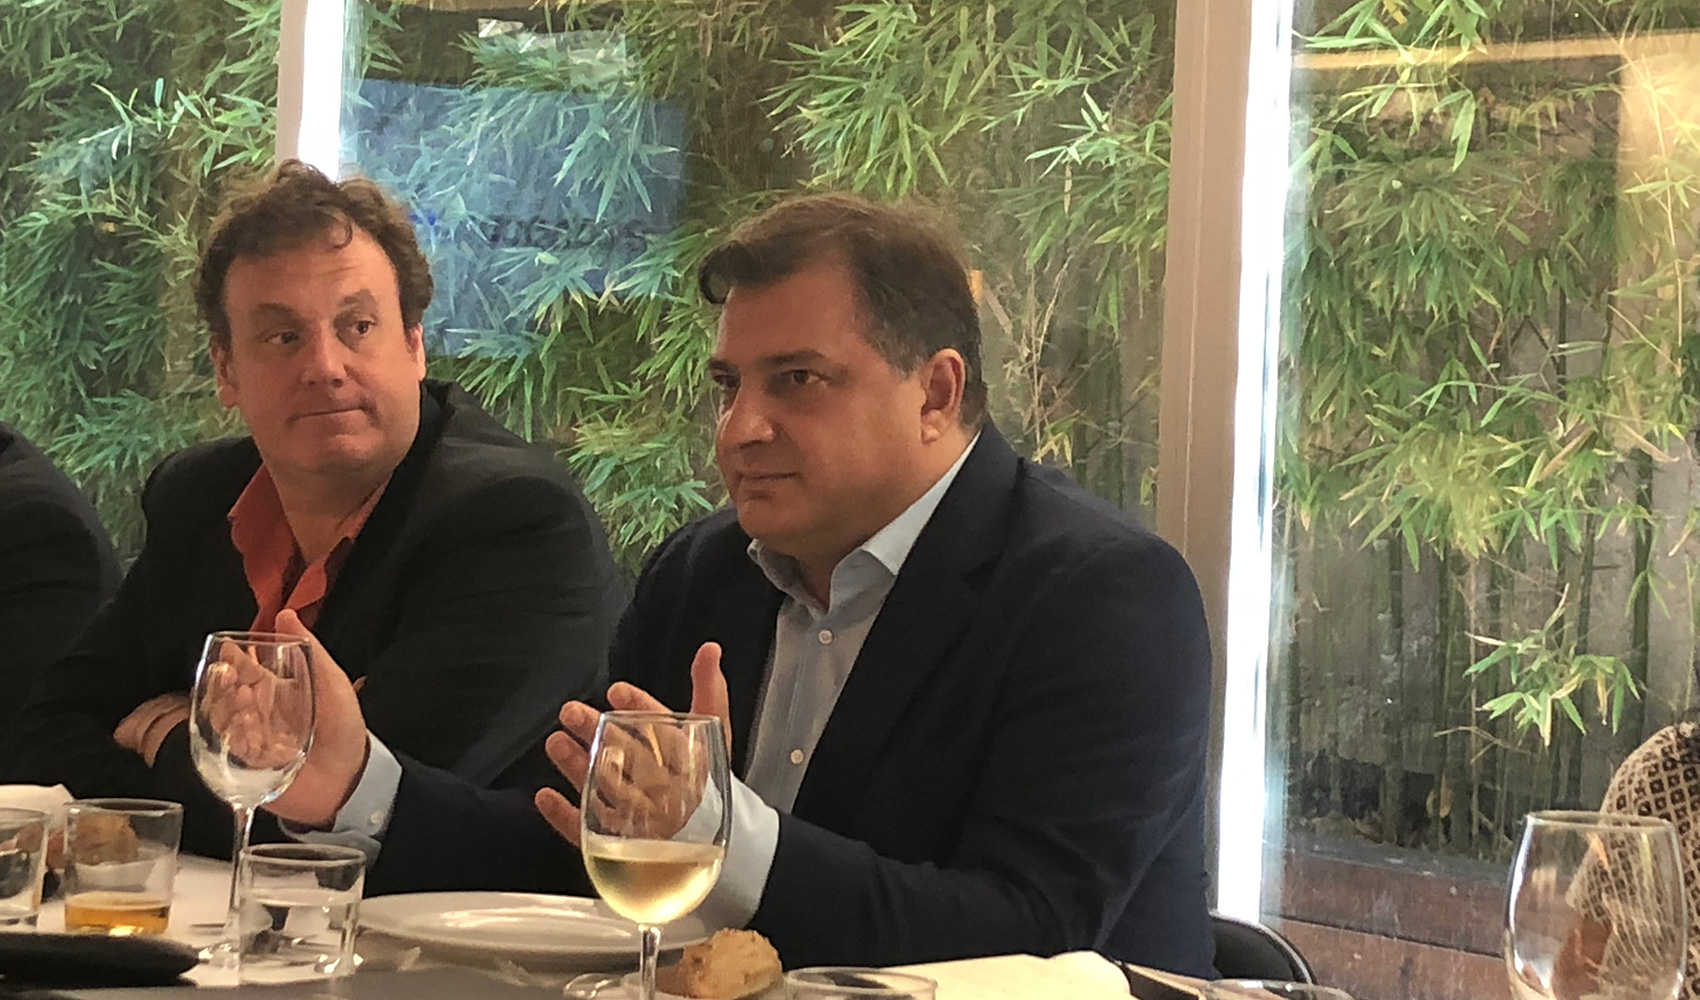 Israel Garca, director general de Altabox, a la izquierda de la imagen, junto a ngel Benguigui, CEO del Grupo Econocom Espaa...